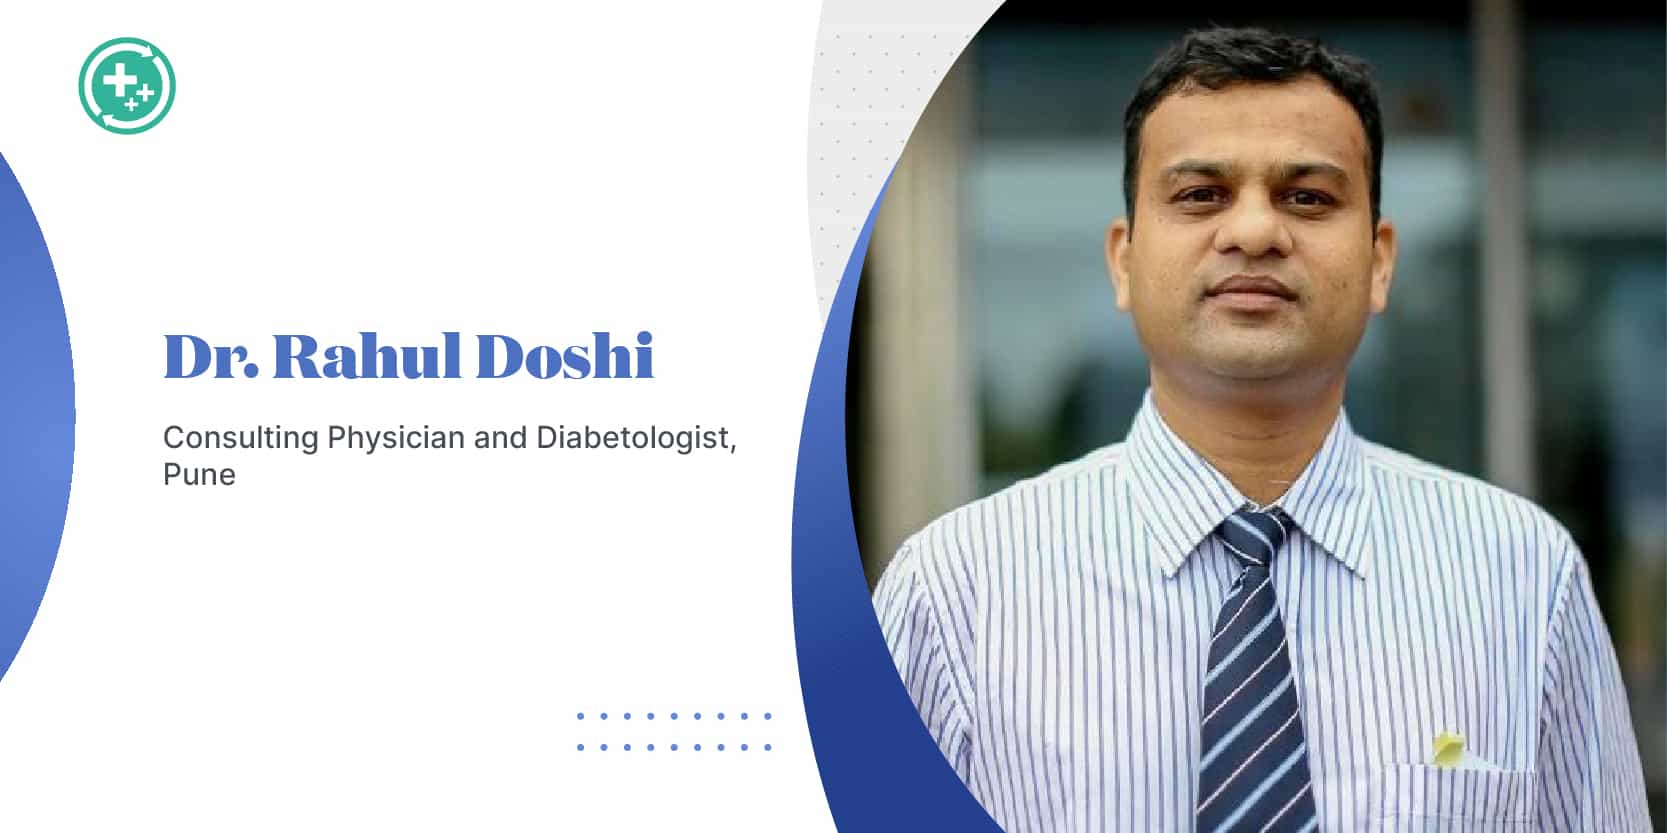 Dr. Rahul Doshi